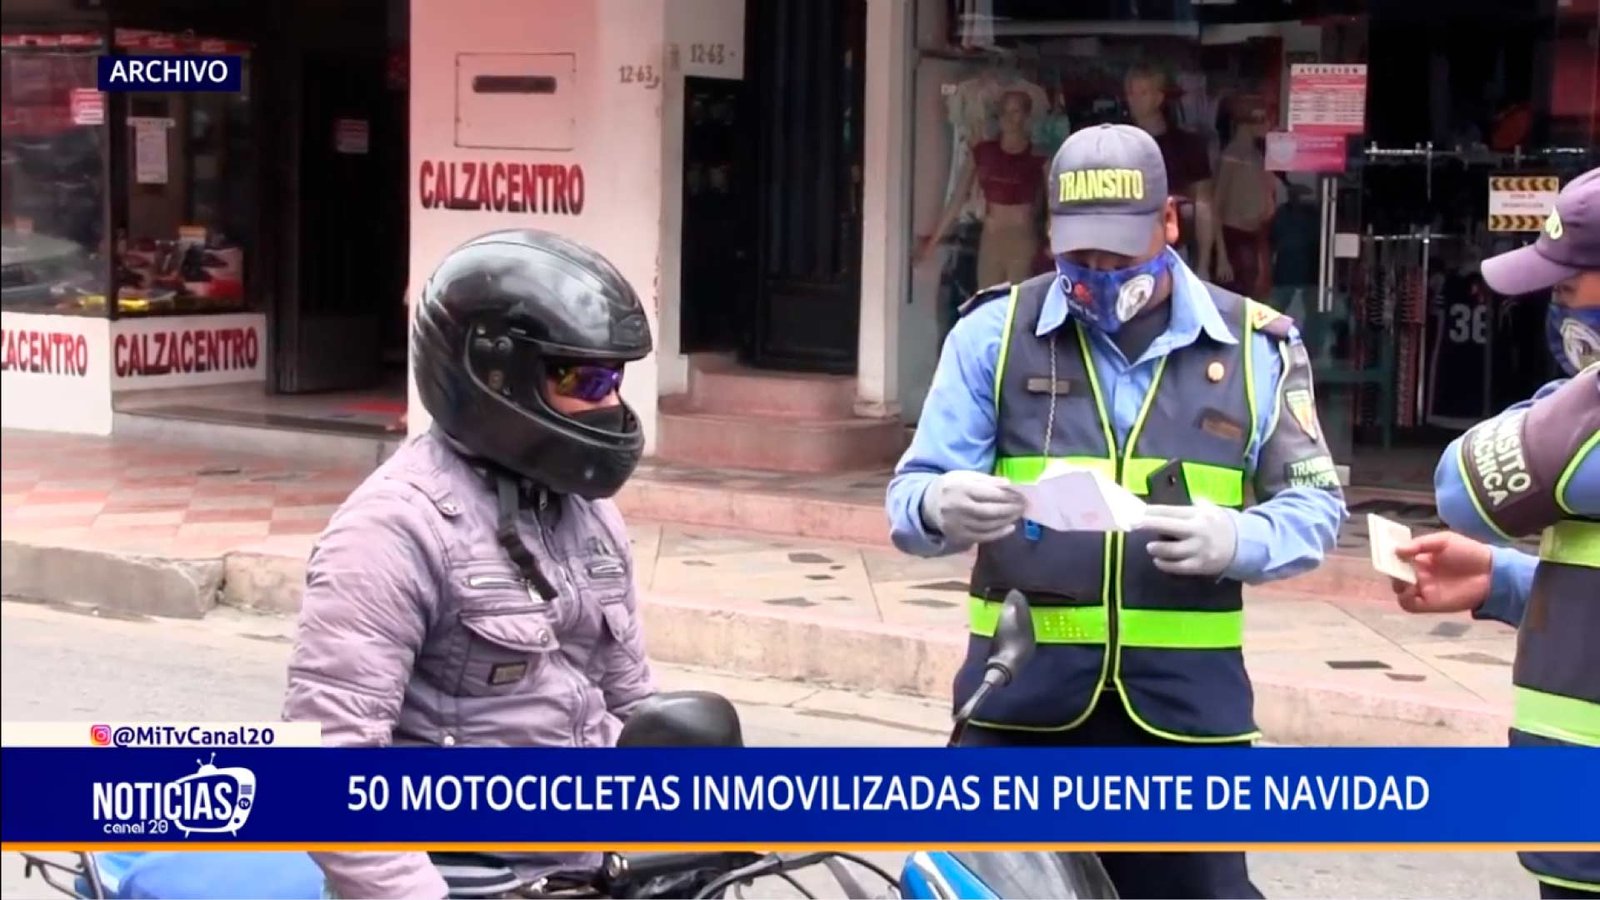 50 MOTOCICLETAS INMOVILIZADAS EN PUENTE DE NAVIDAD